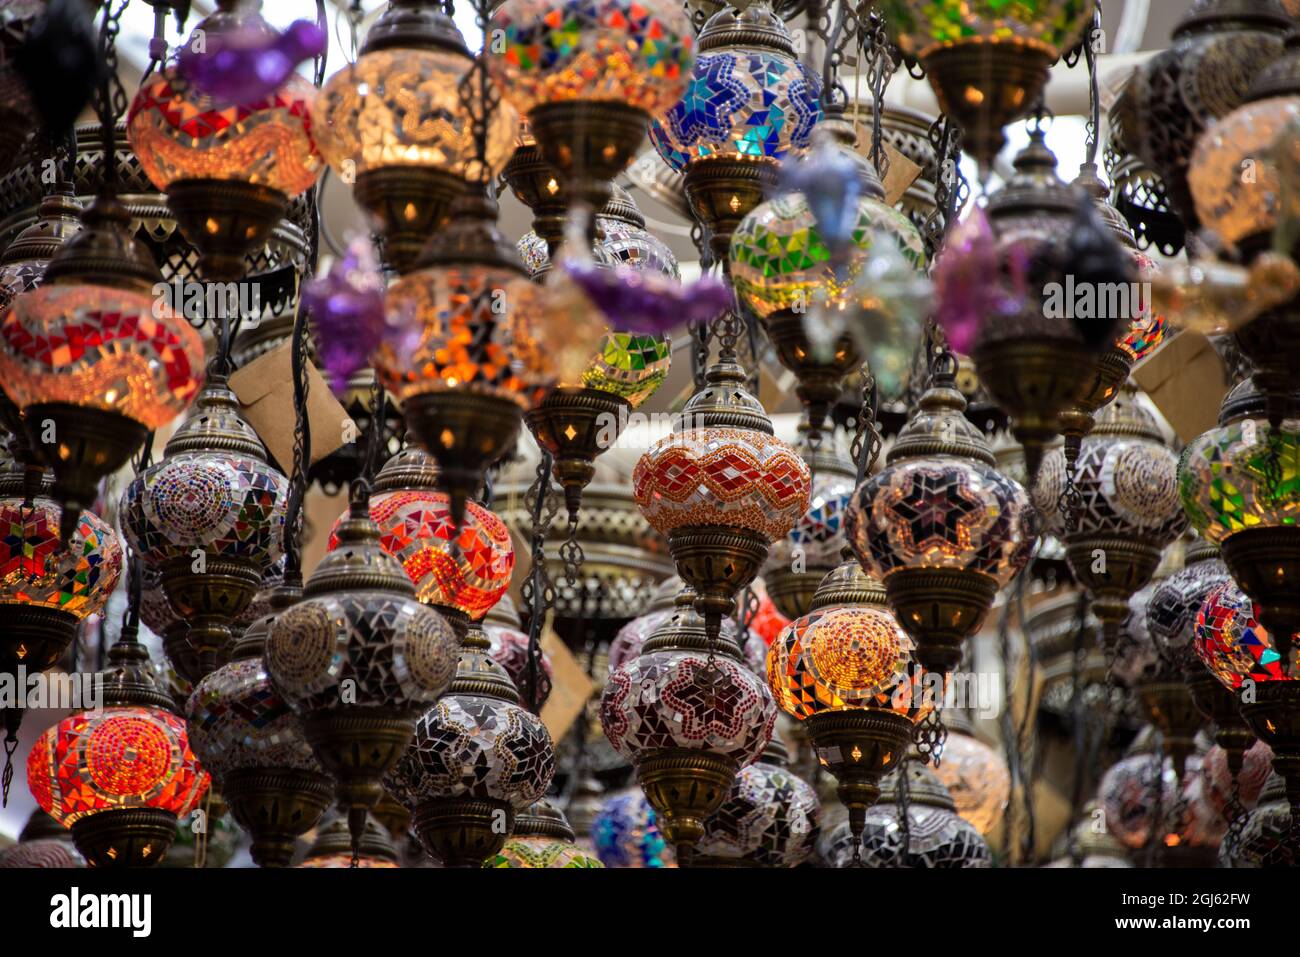 Ciudad capital de Omán, Muscat, Muttrah Souk. Lámparas de cristal de colores típicos en exhibición en el histórico mercado o souk. Foto de stock